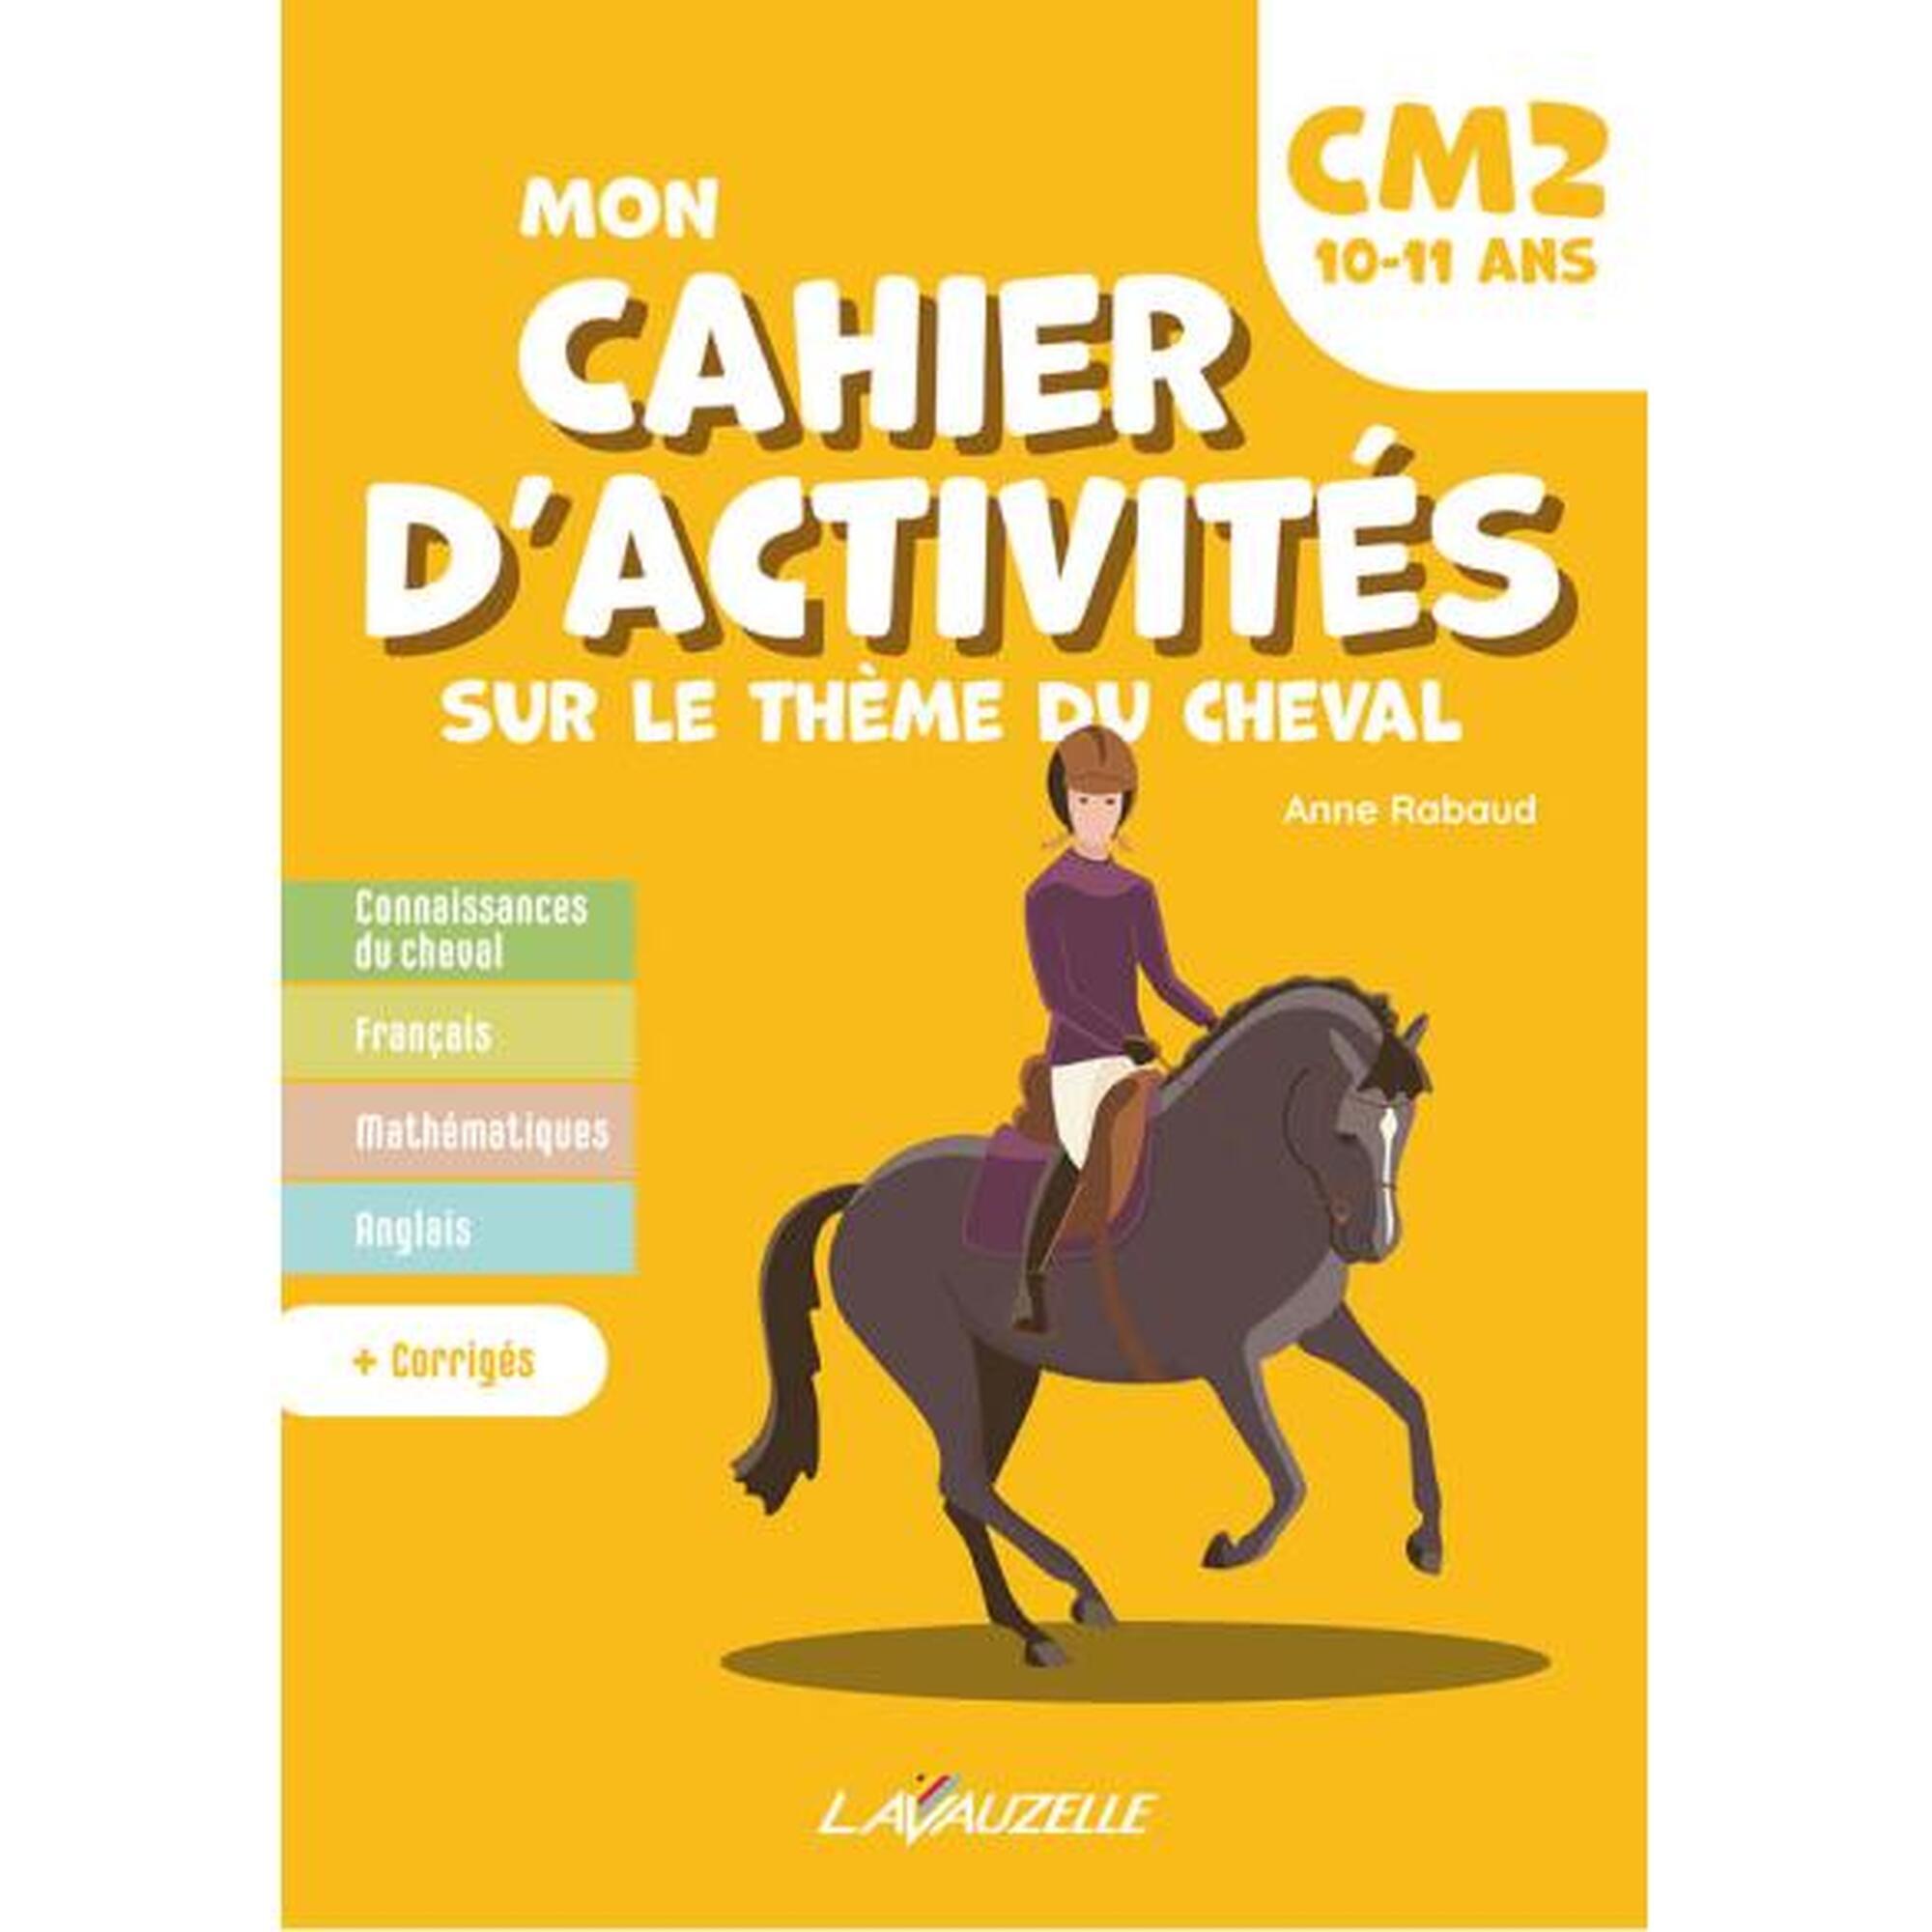 Mon cahier d'activités sur le thème du cheval - CM2